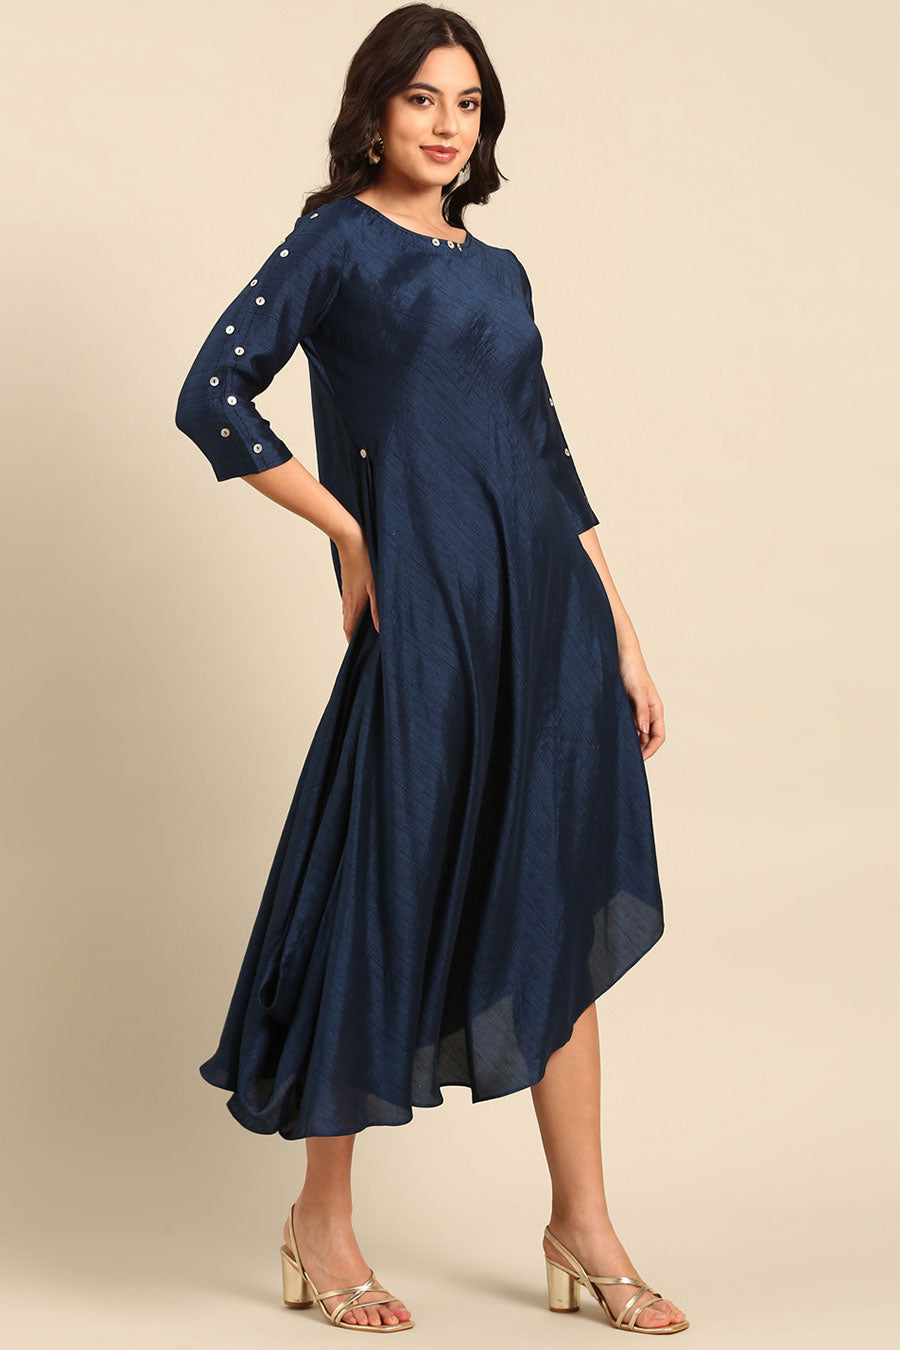 Blue Embellished Dress